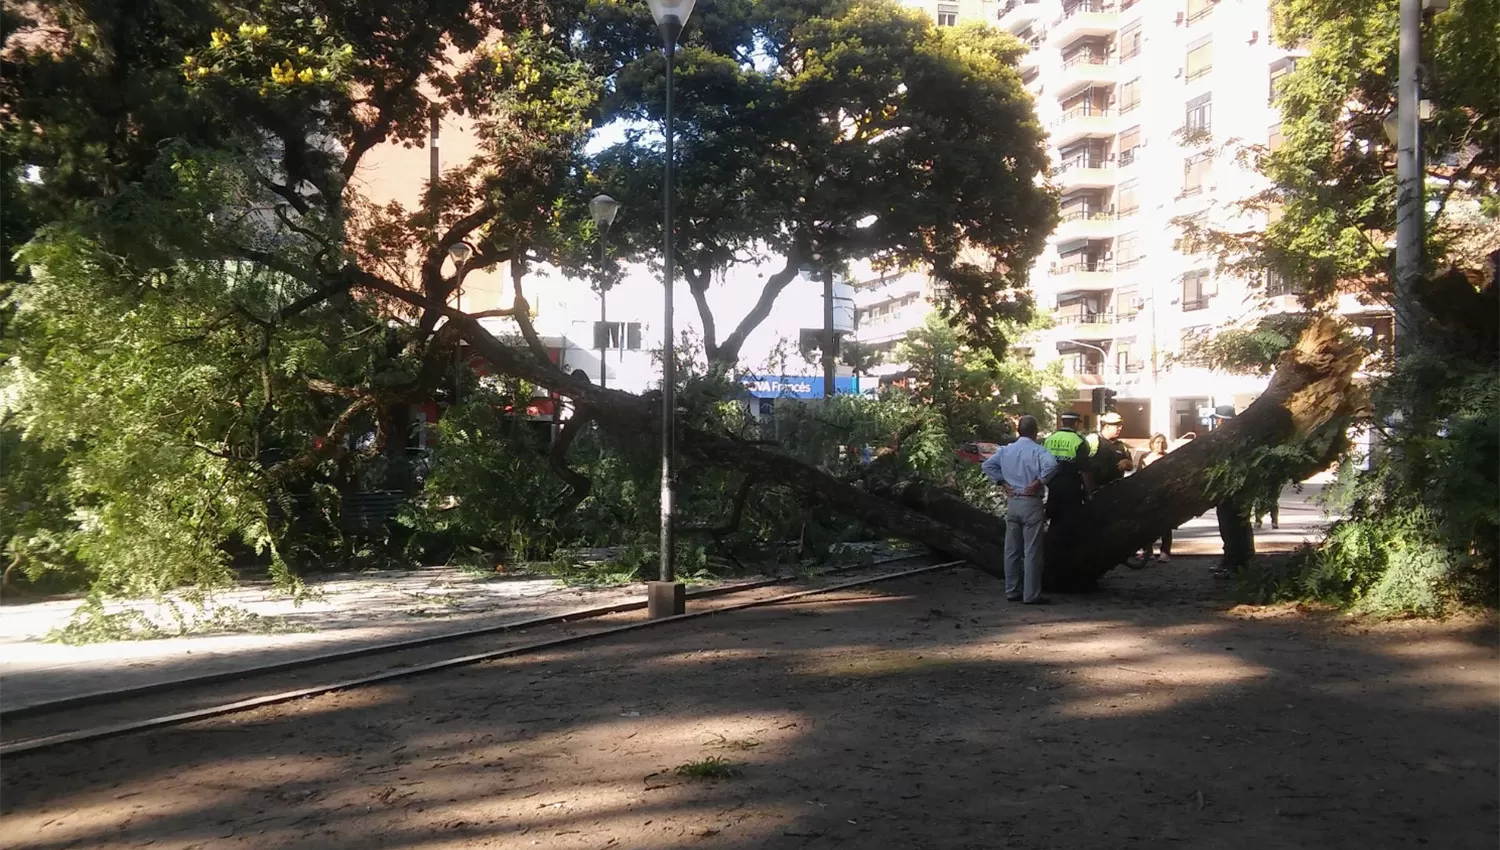 En la zona donde cayó el árbol suele ser muy concurrida durante todo el día. FOTO DE WWW.TWITTER.COM/ROMYABRAHAM88